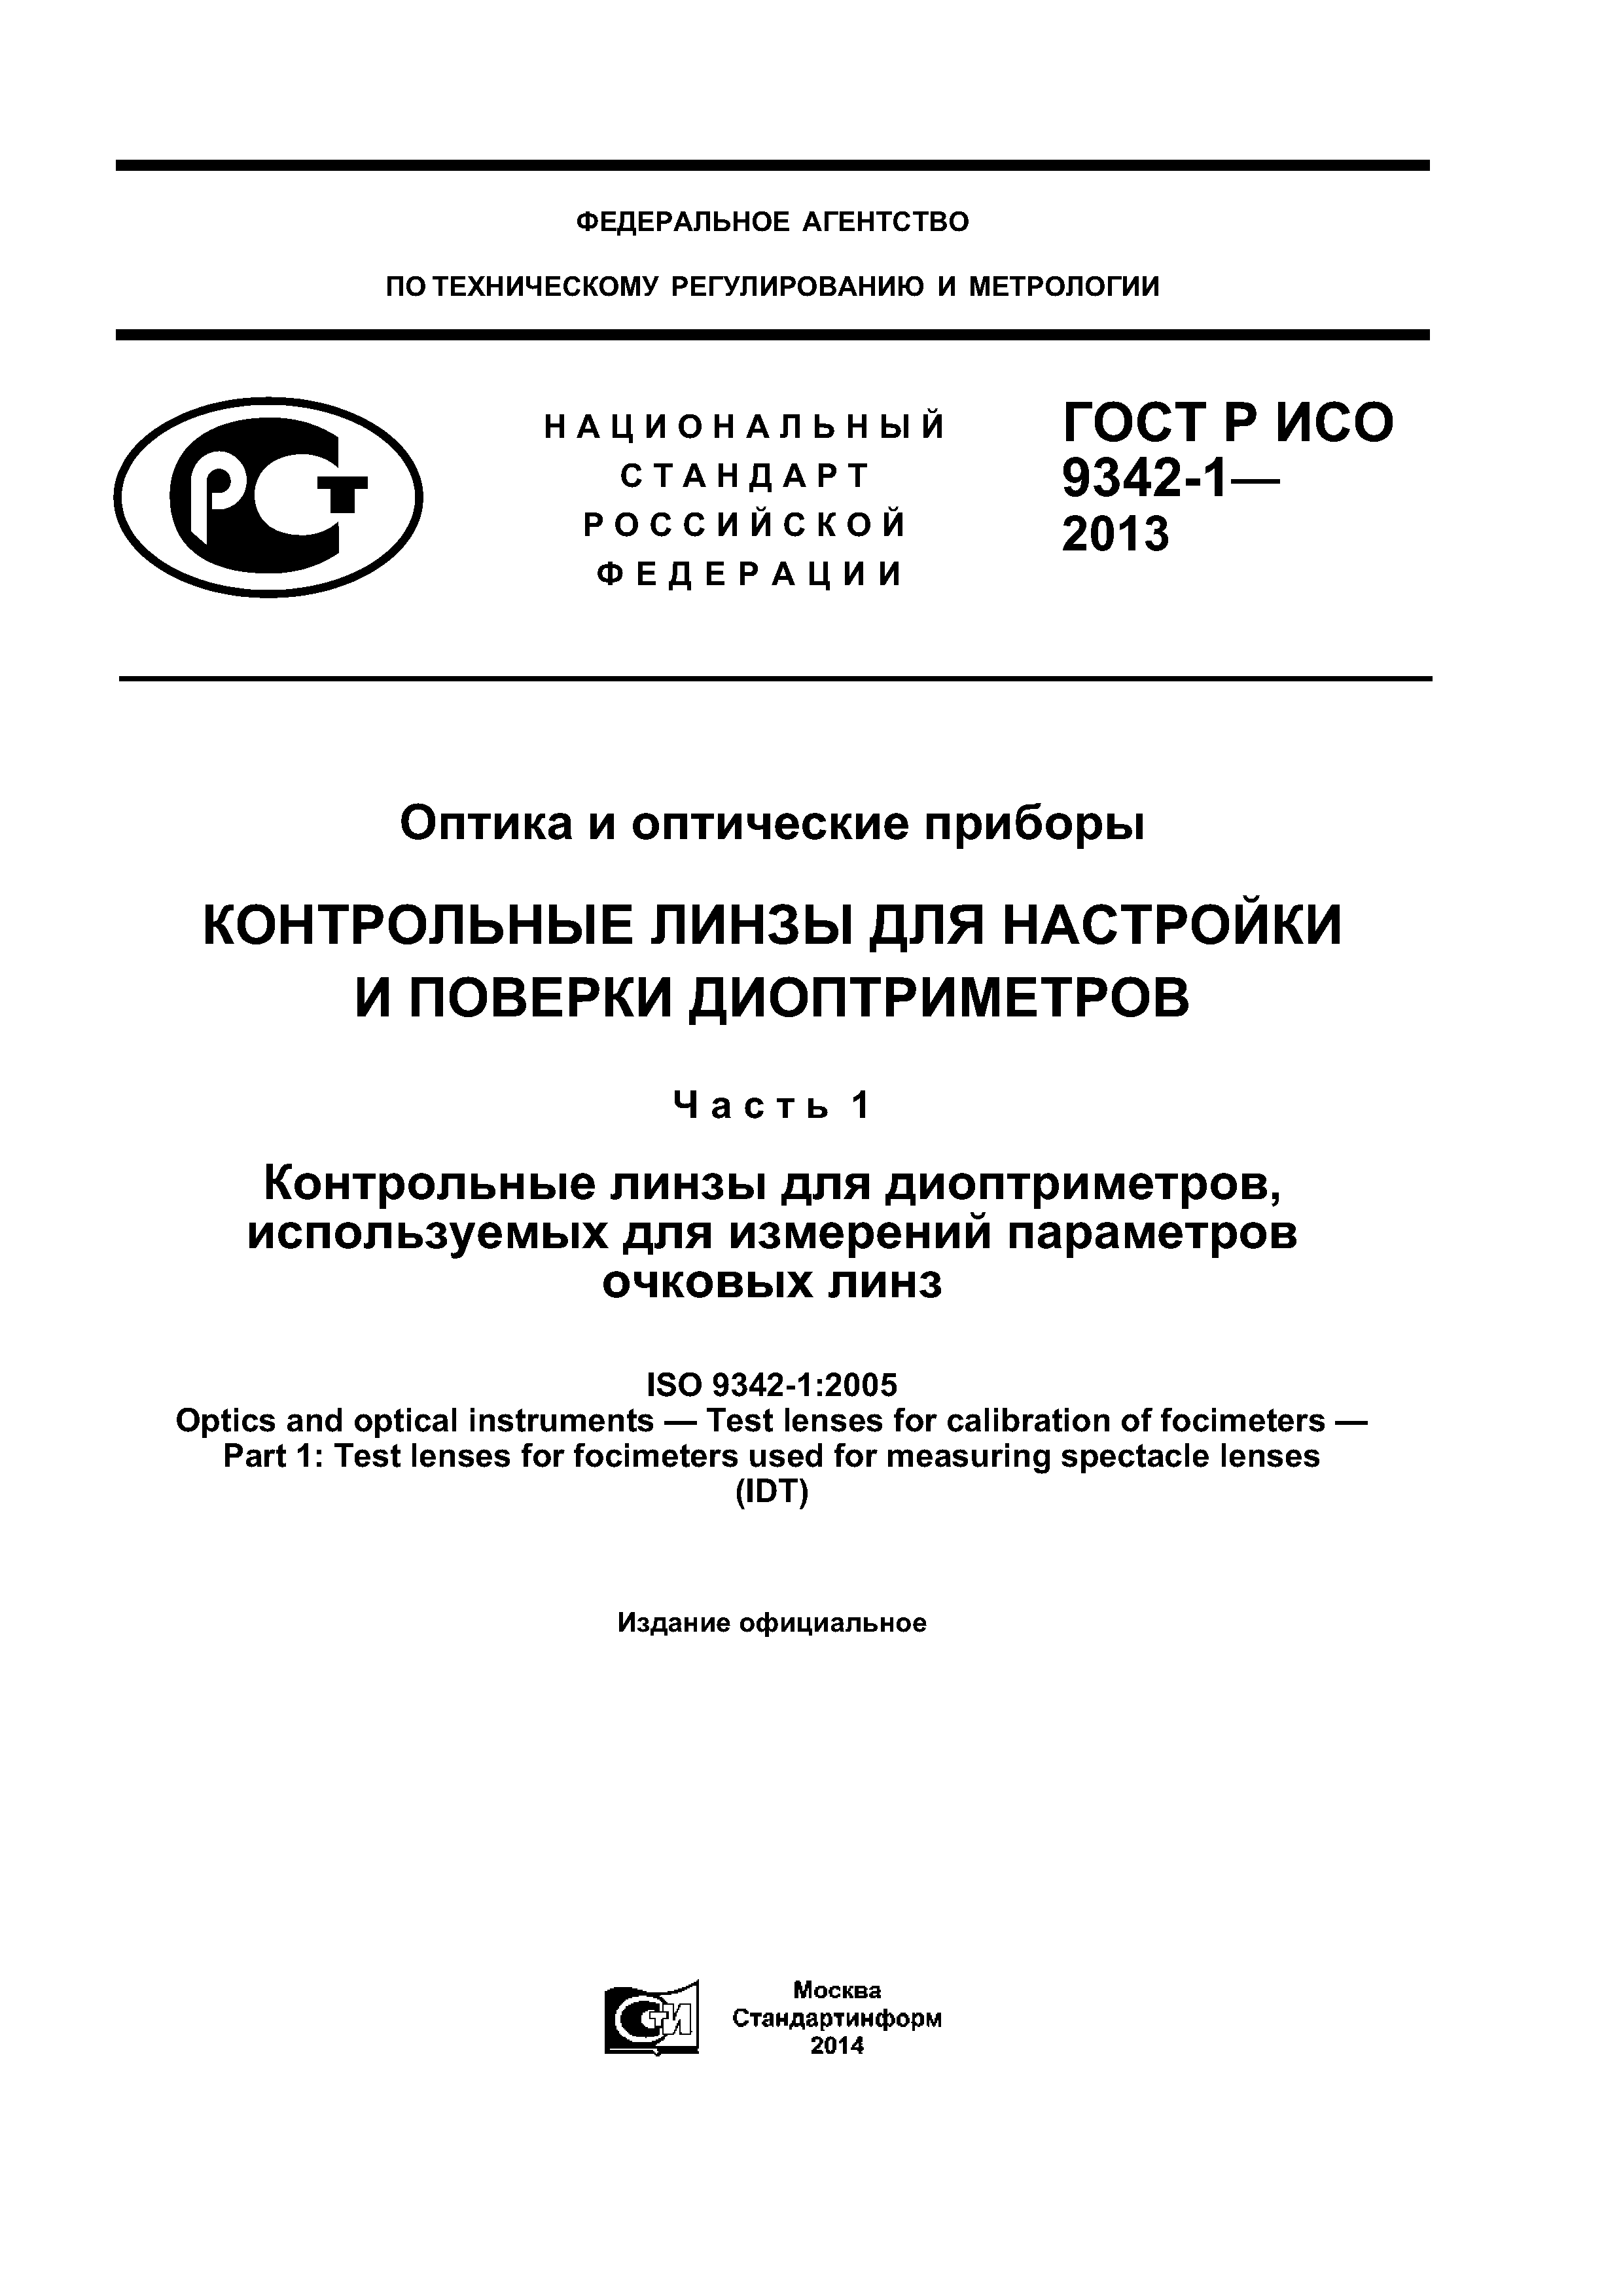 ГОСТ Р ИСО 9342-1-2013